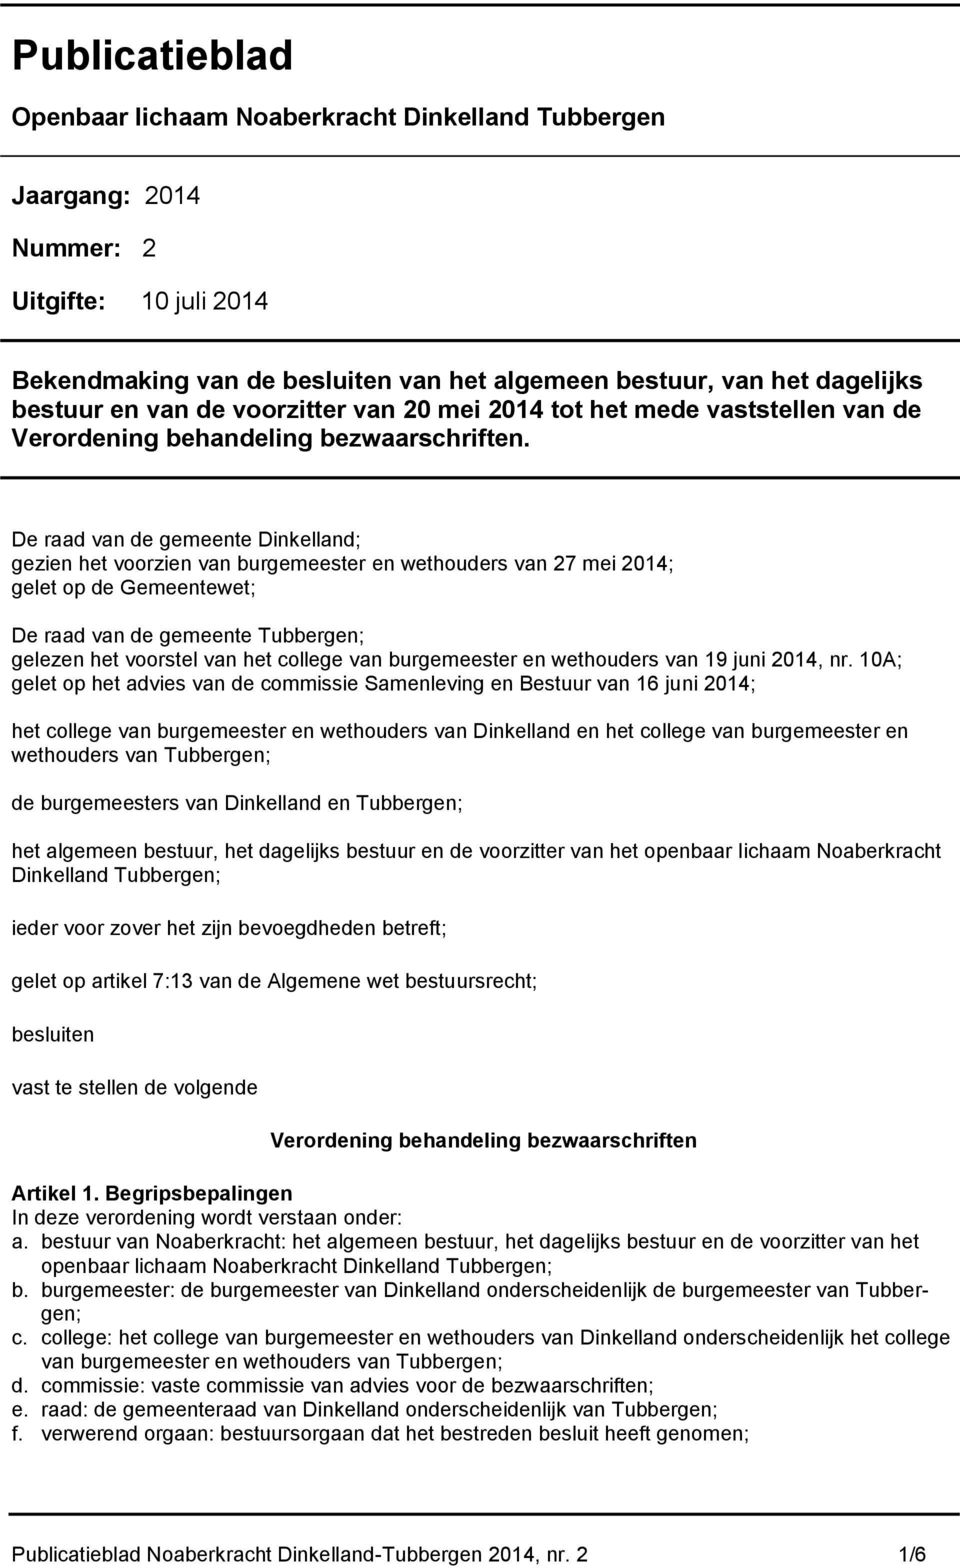 De raad van de gemeente Dinkelland; gezien het voorzien van burgemeester en wethouders van 27 mei 2014; gelet op de Gemeentewet; De raad van de gemeente Tubbergen; gelezen het voorstel van het